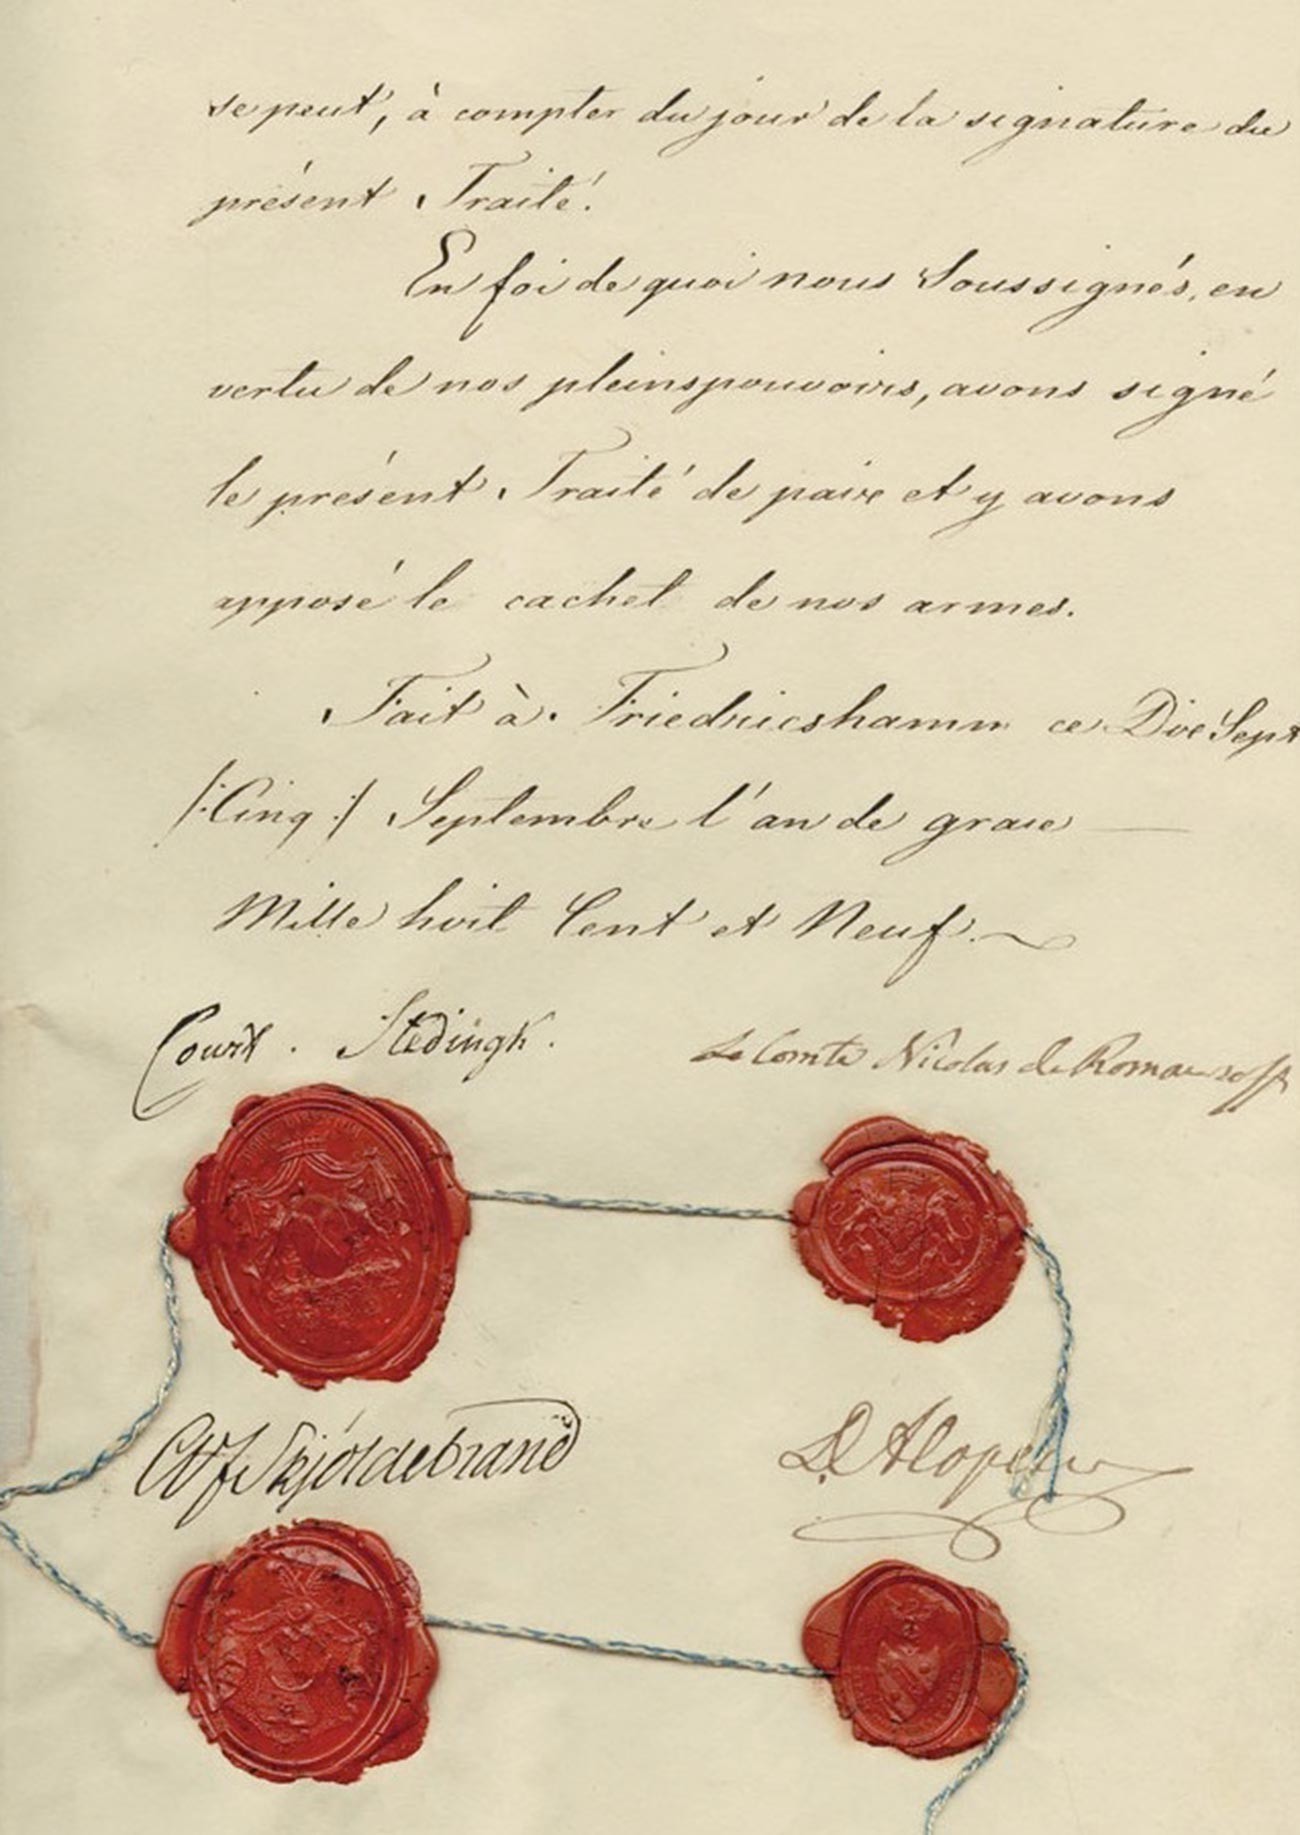 Tratado de Fredrikshamn